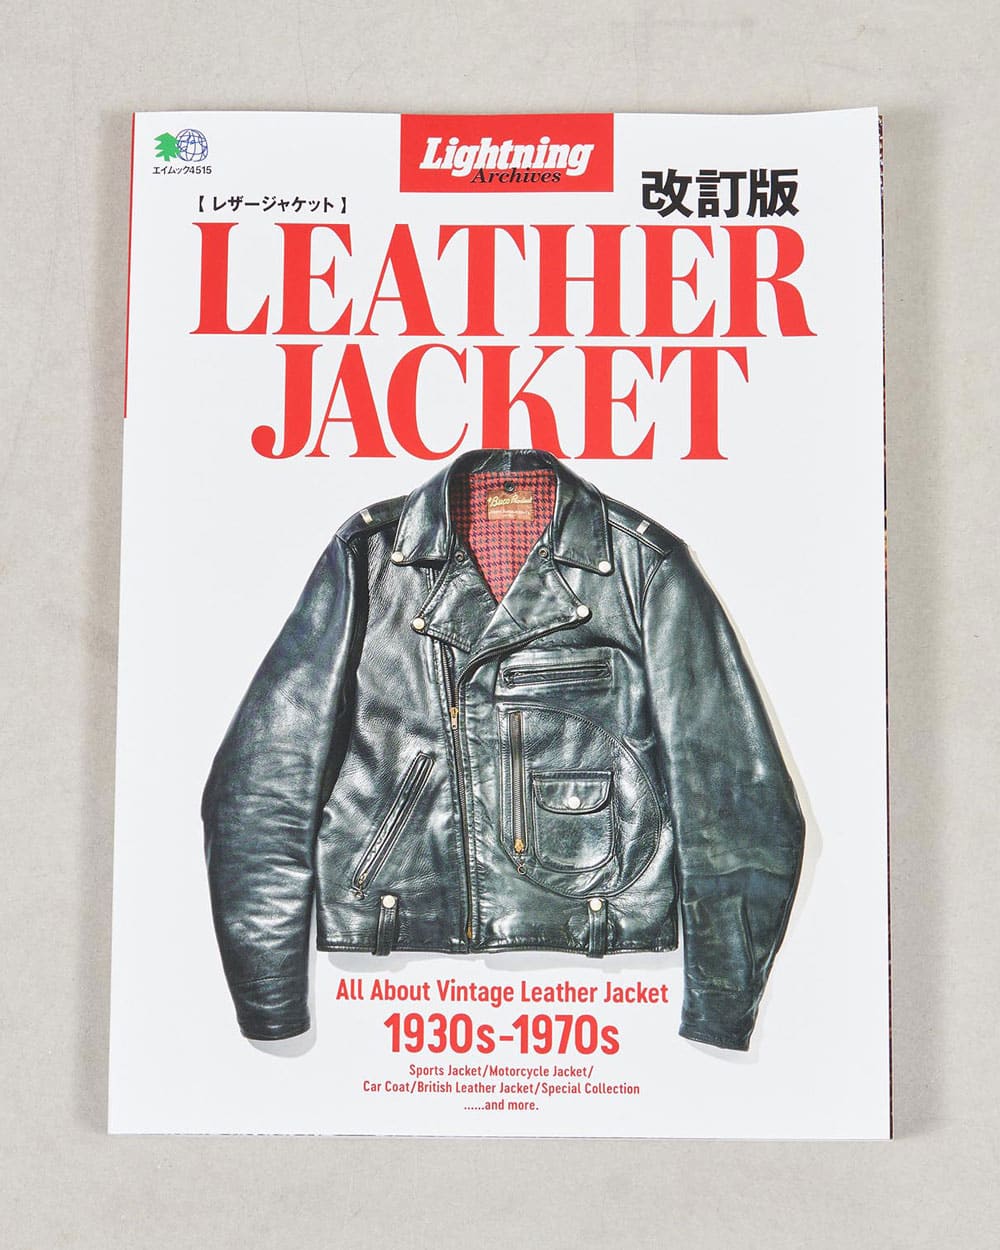 Lightning Archives Vintage Leather Jacket